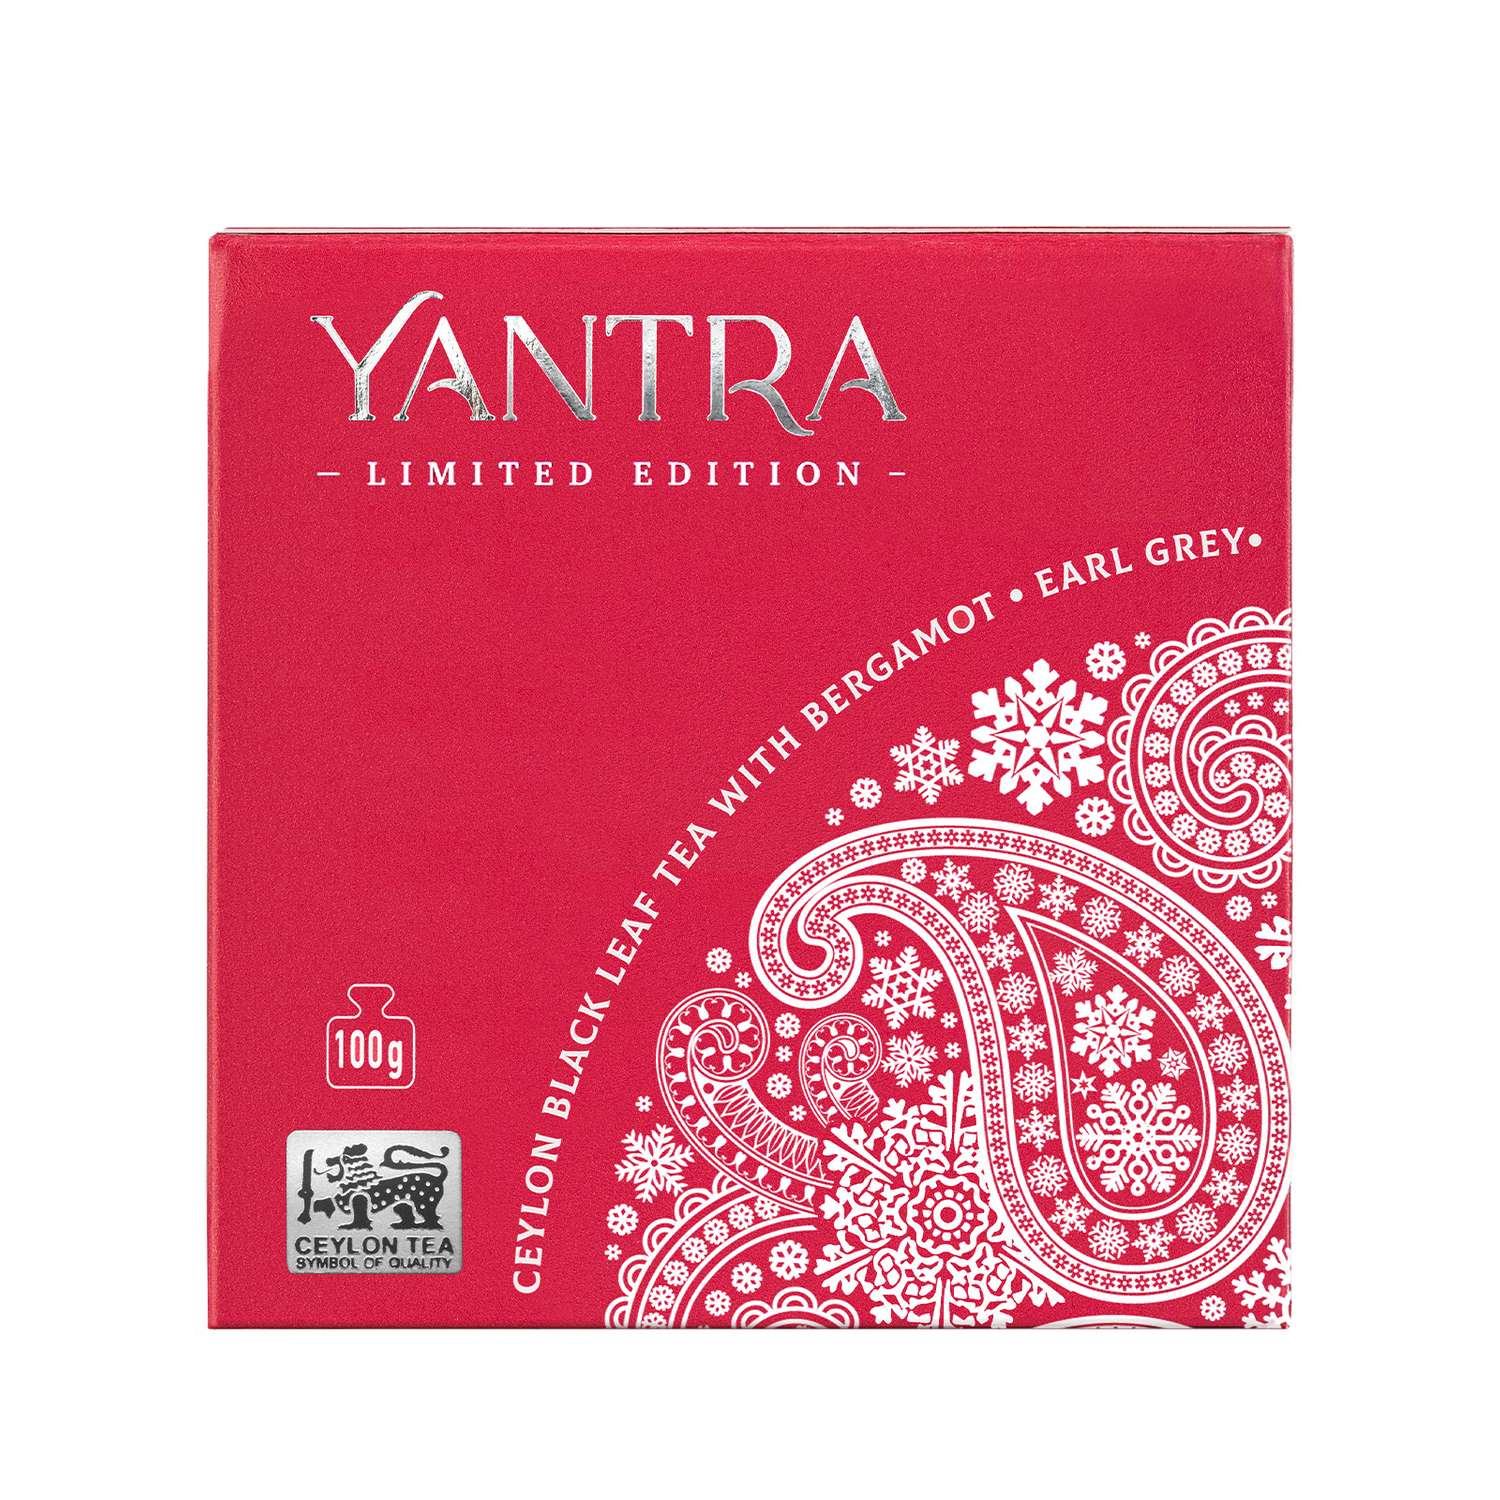 Чай Limited Edition Yantra чёрный листовой с бергамот Earl Grey стандарт FBOP 100 г - фото 5